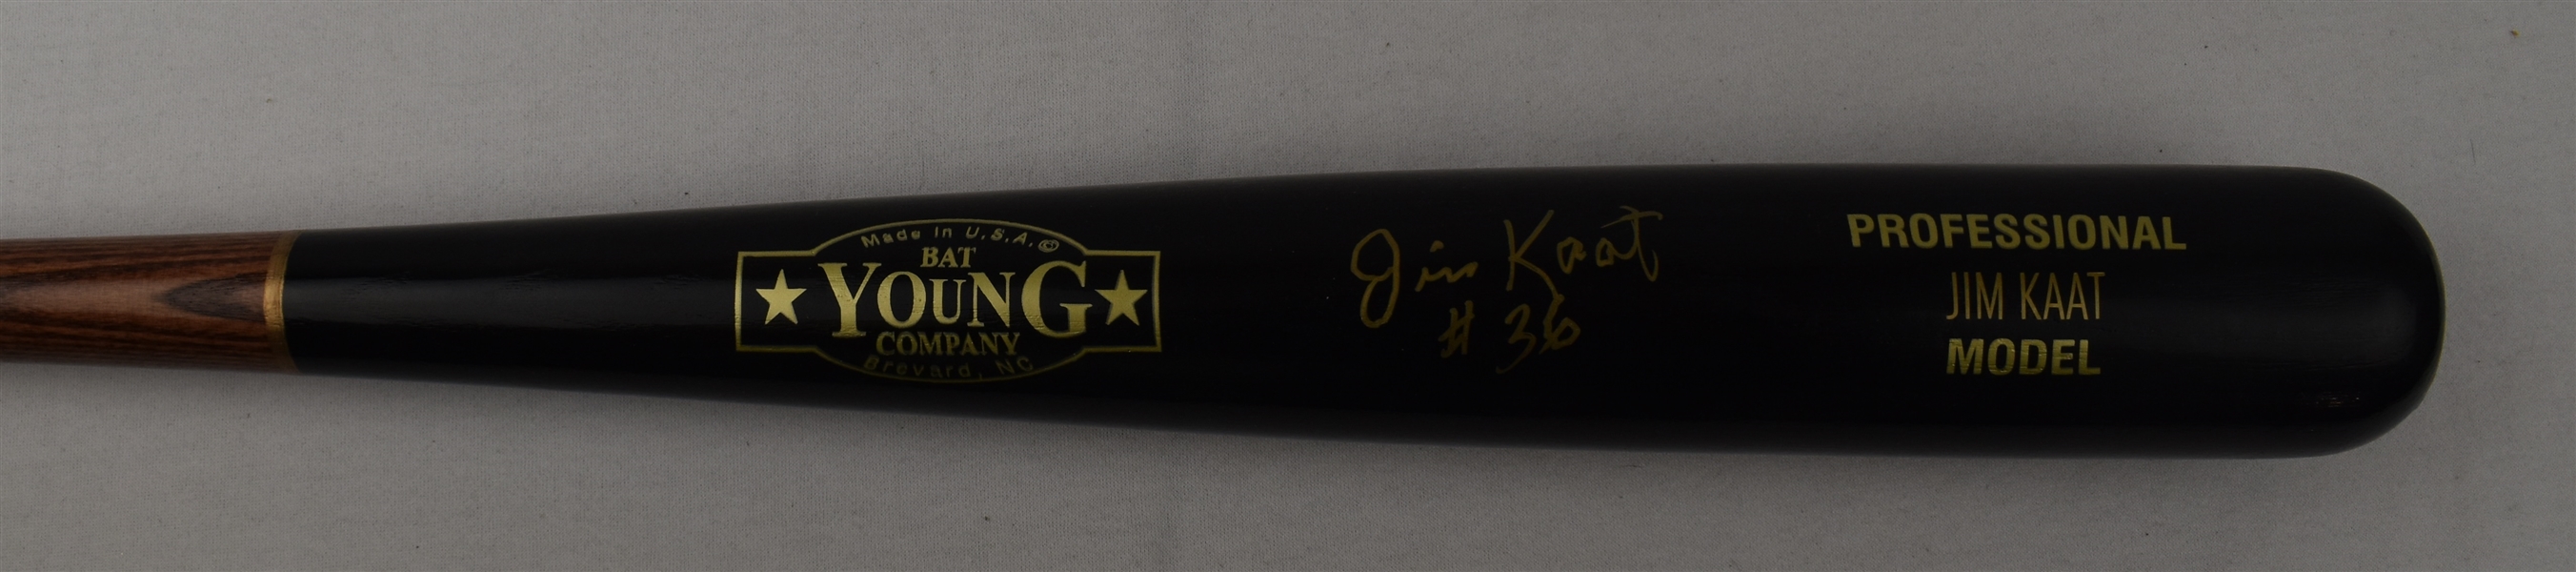 Jim Kaat Autographed Bat PSA/DNA